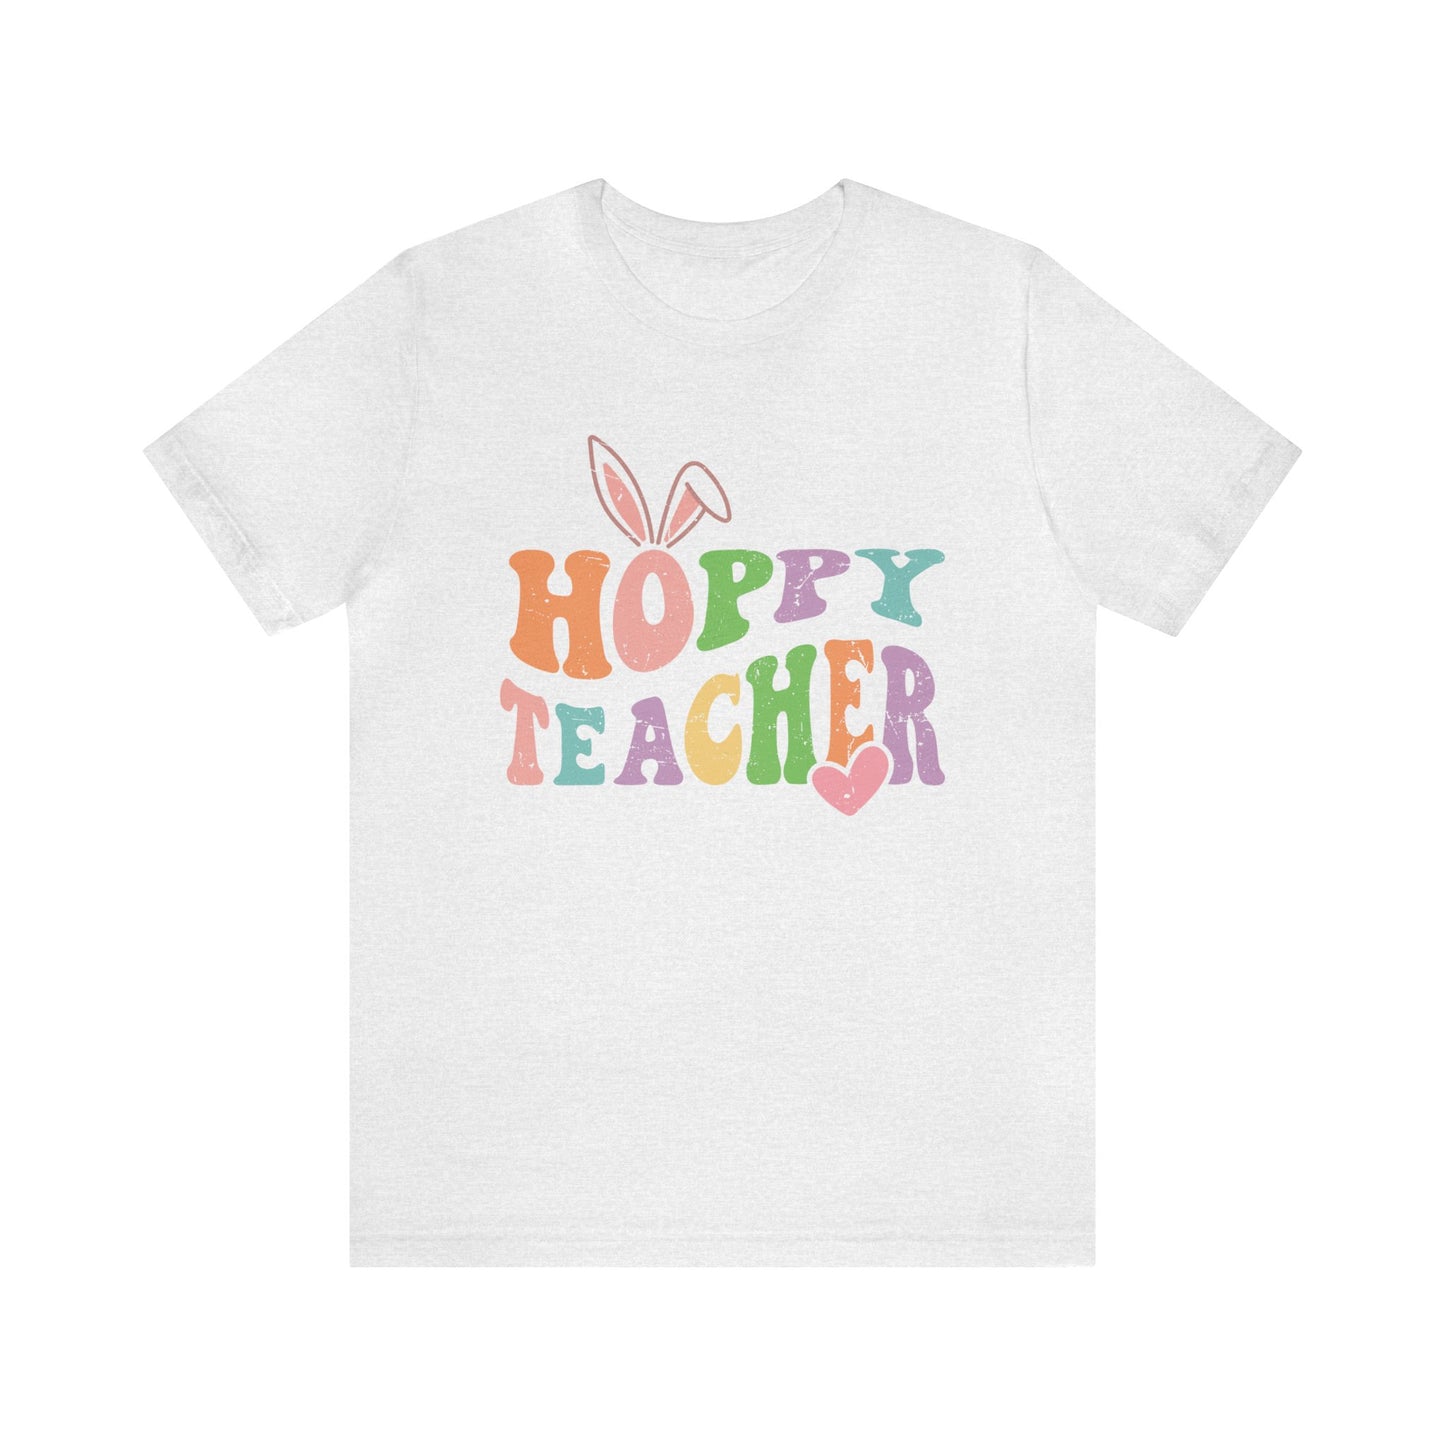 Hoppy Teacher Easter Women's Short Sleeve Tee